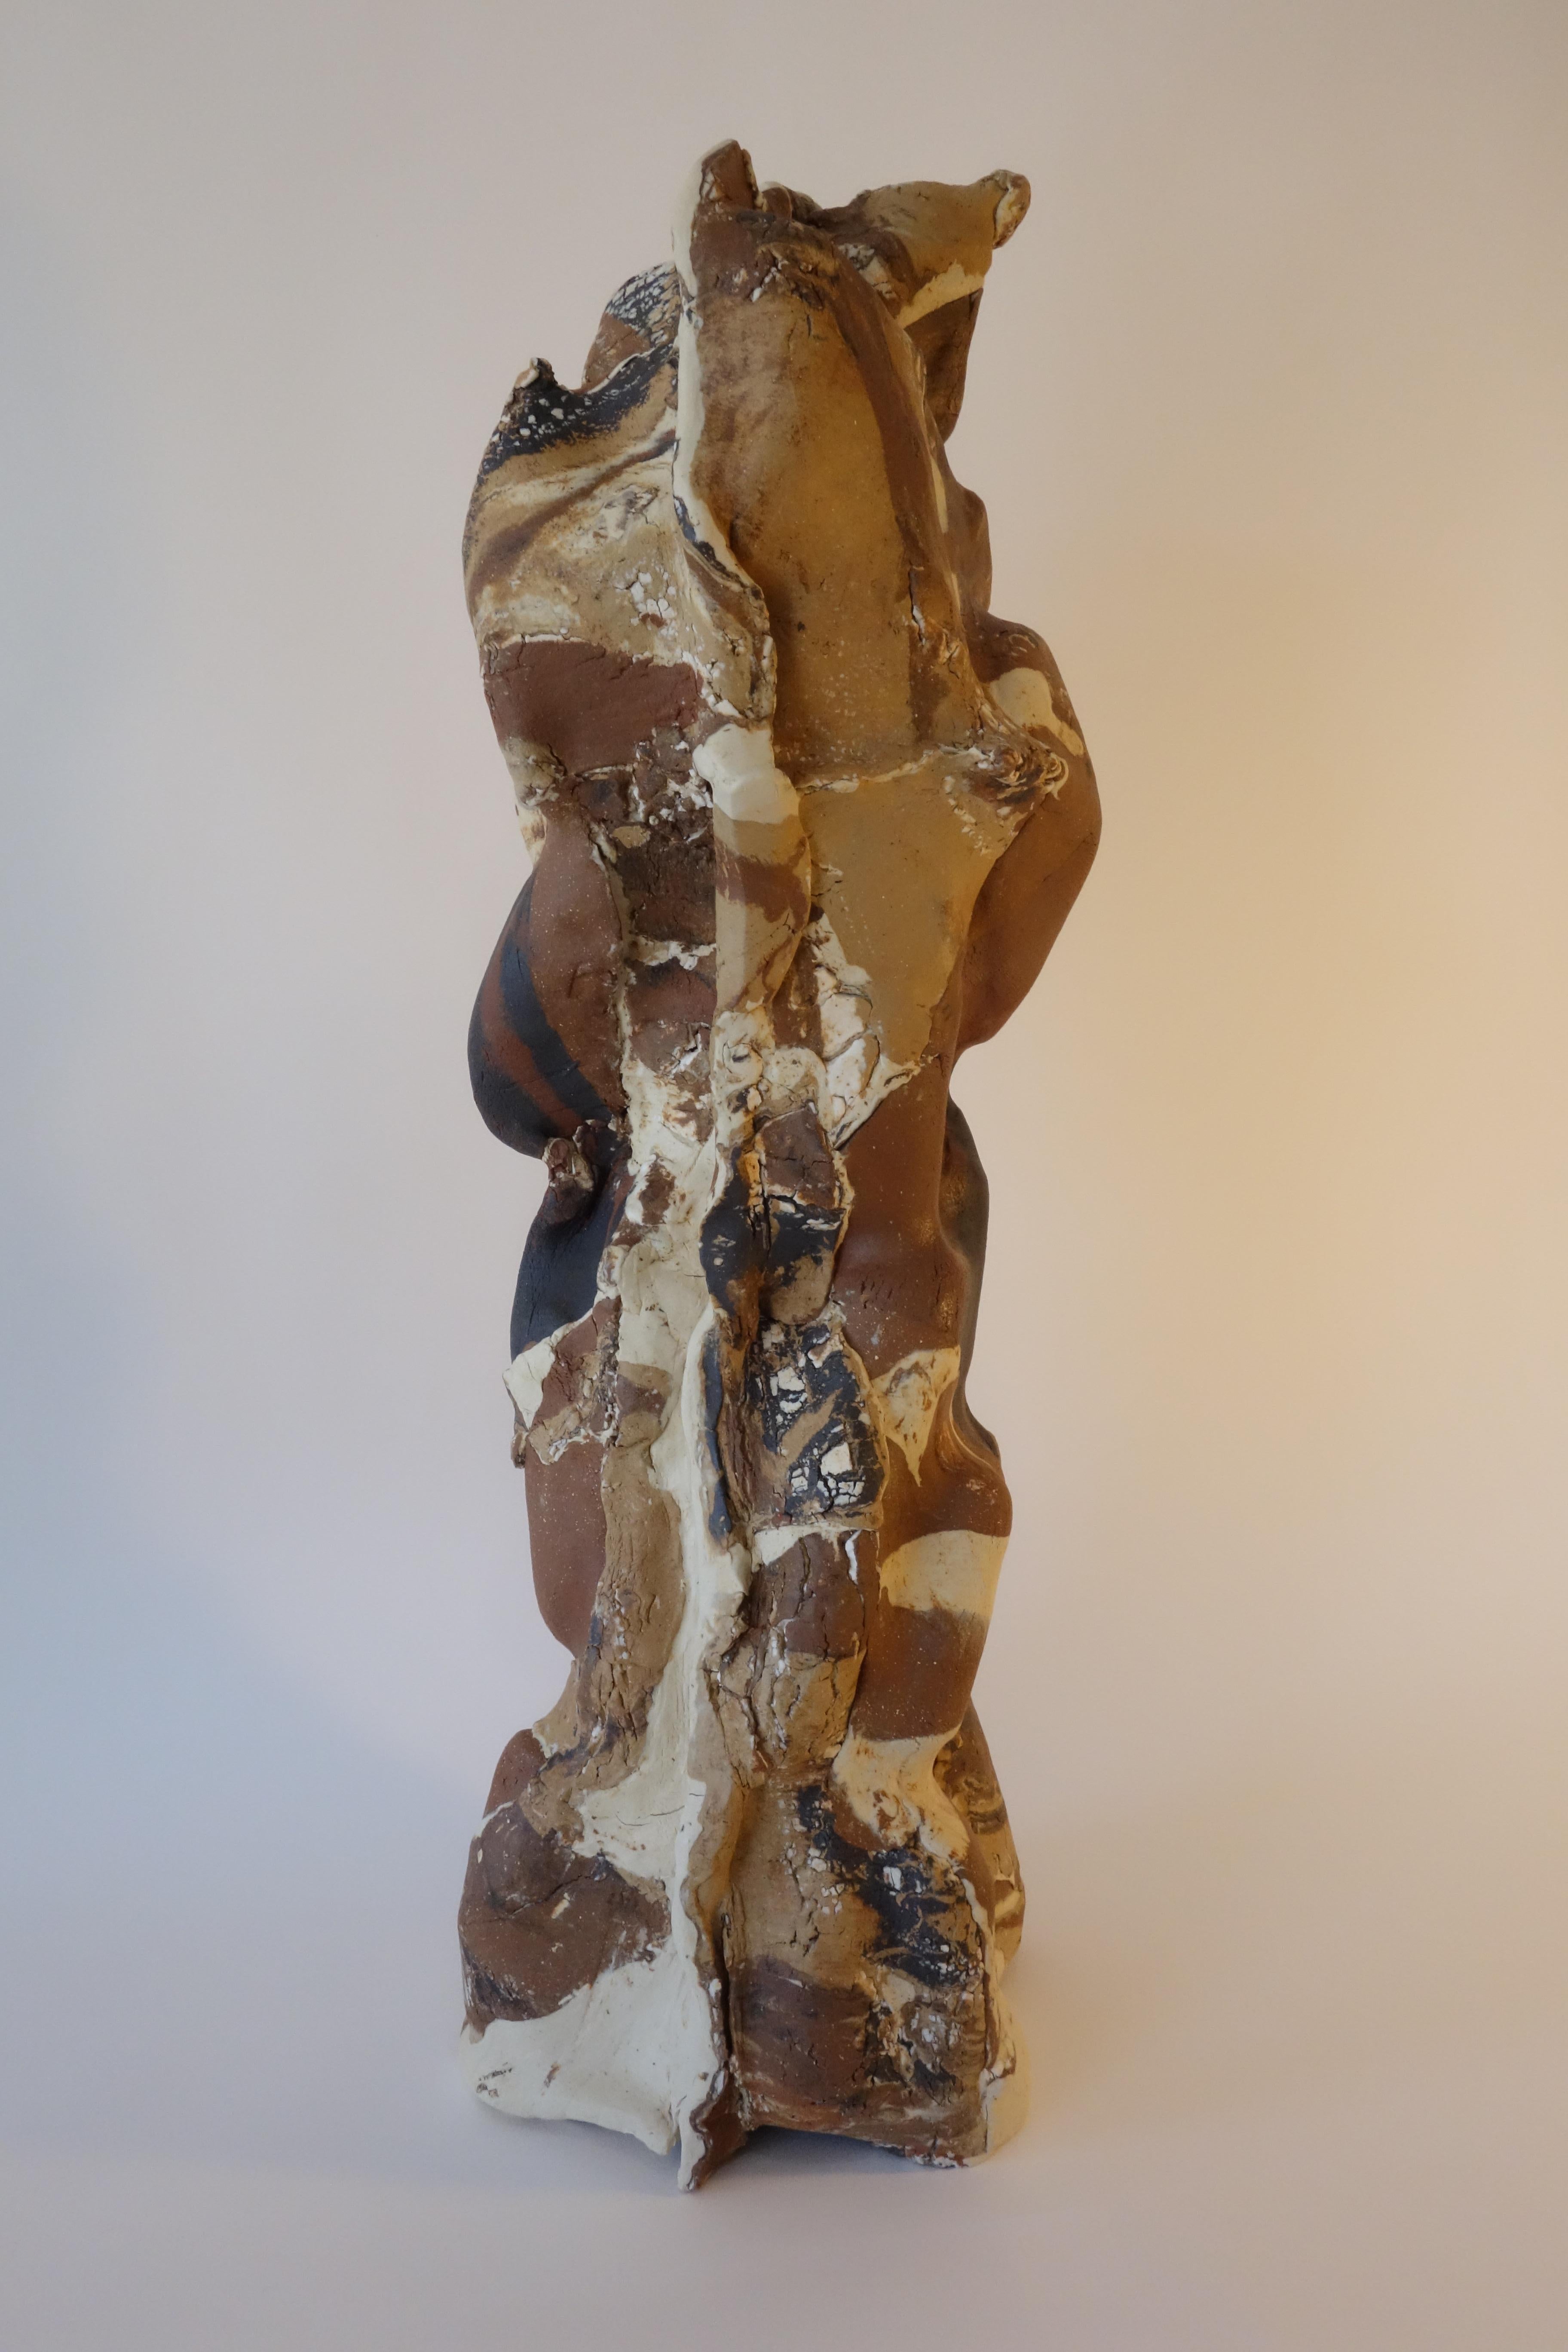 Abstract Sculpture Anna Bush Crews - Tourbillon NOR